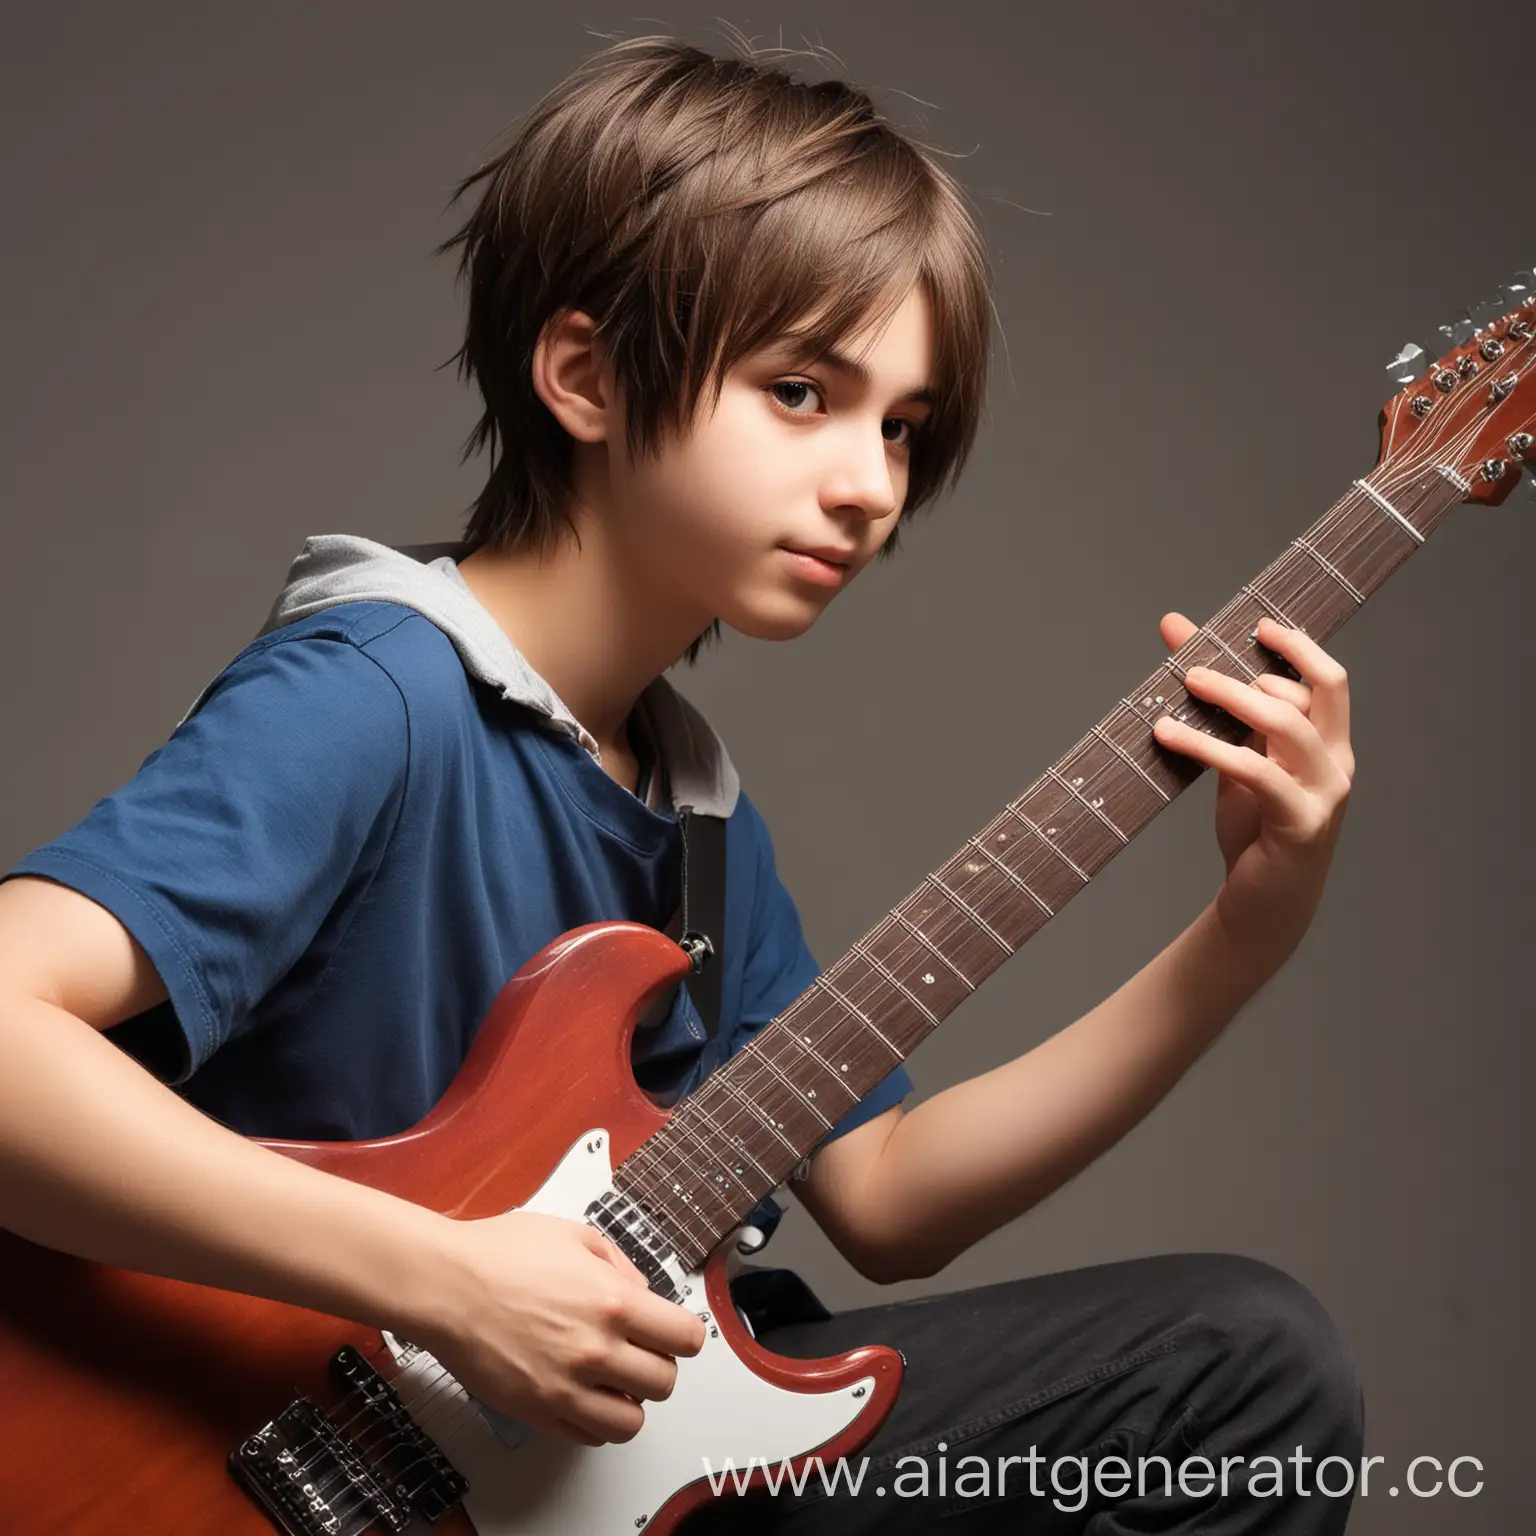 аниме подросток играет на гитаре
